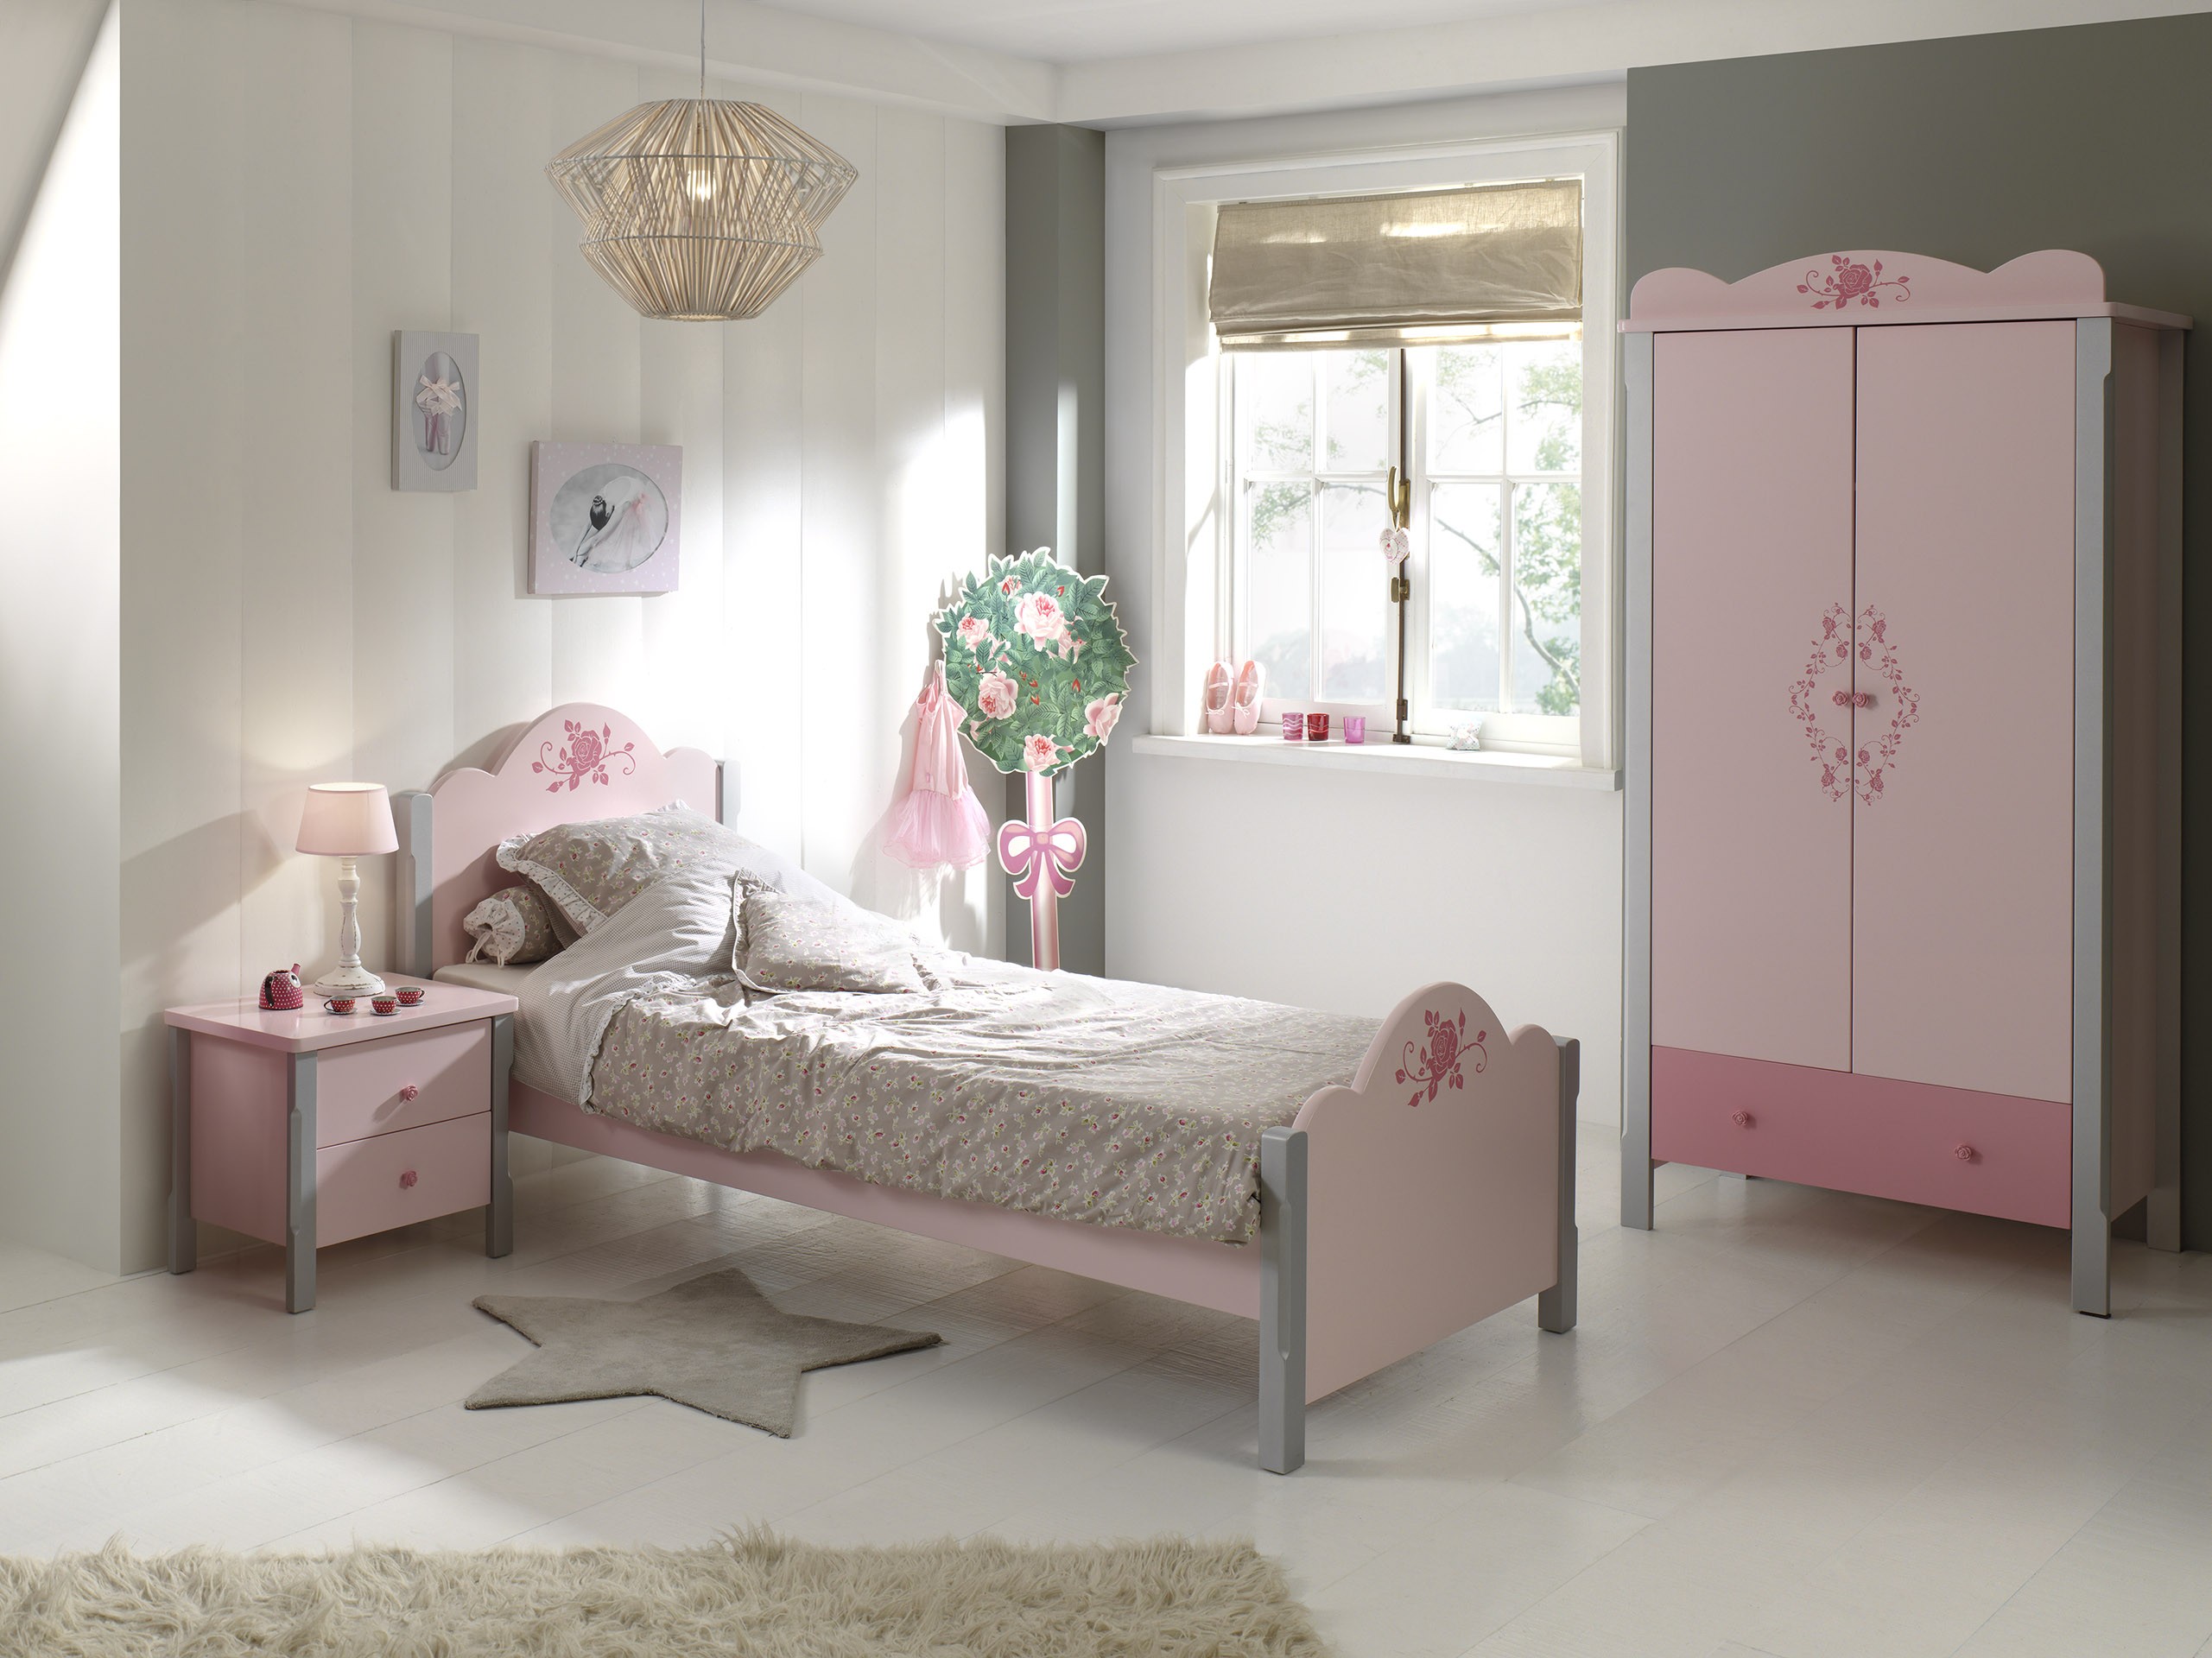 Vipack - Chambre 3 pièces gris et rose Girly | LesTendances.fr